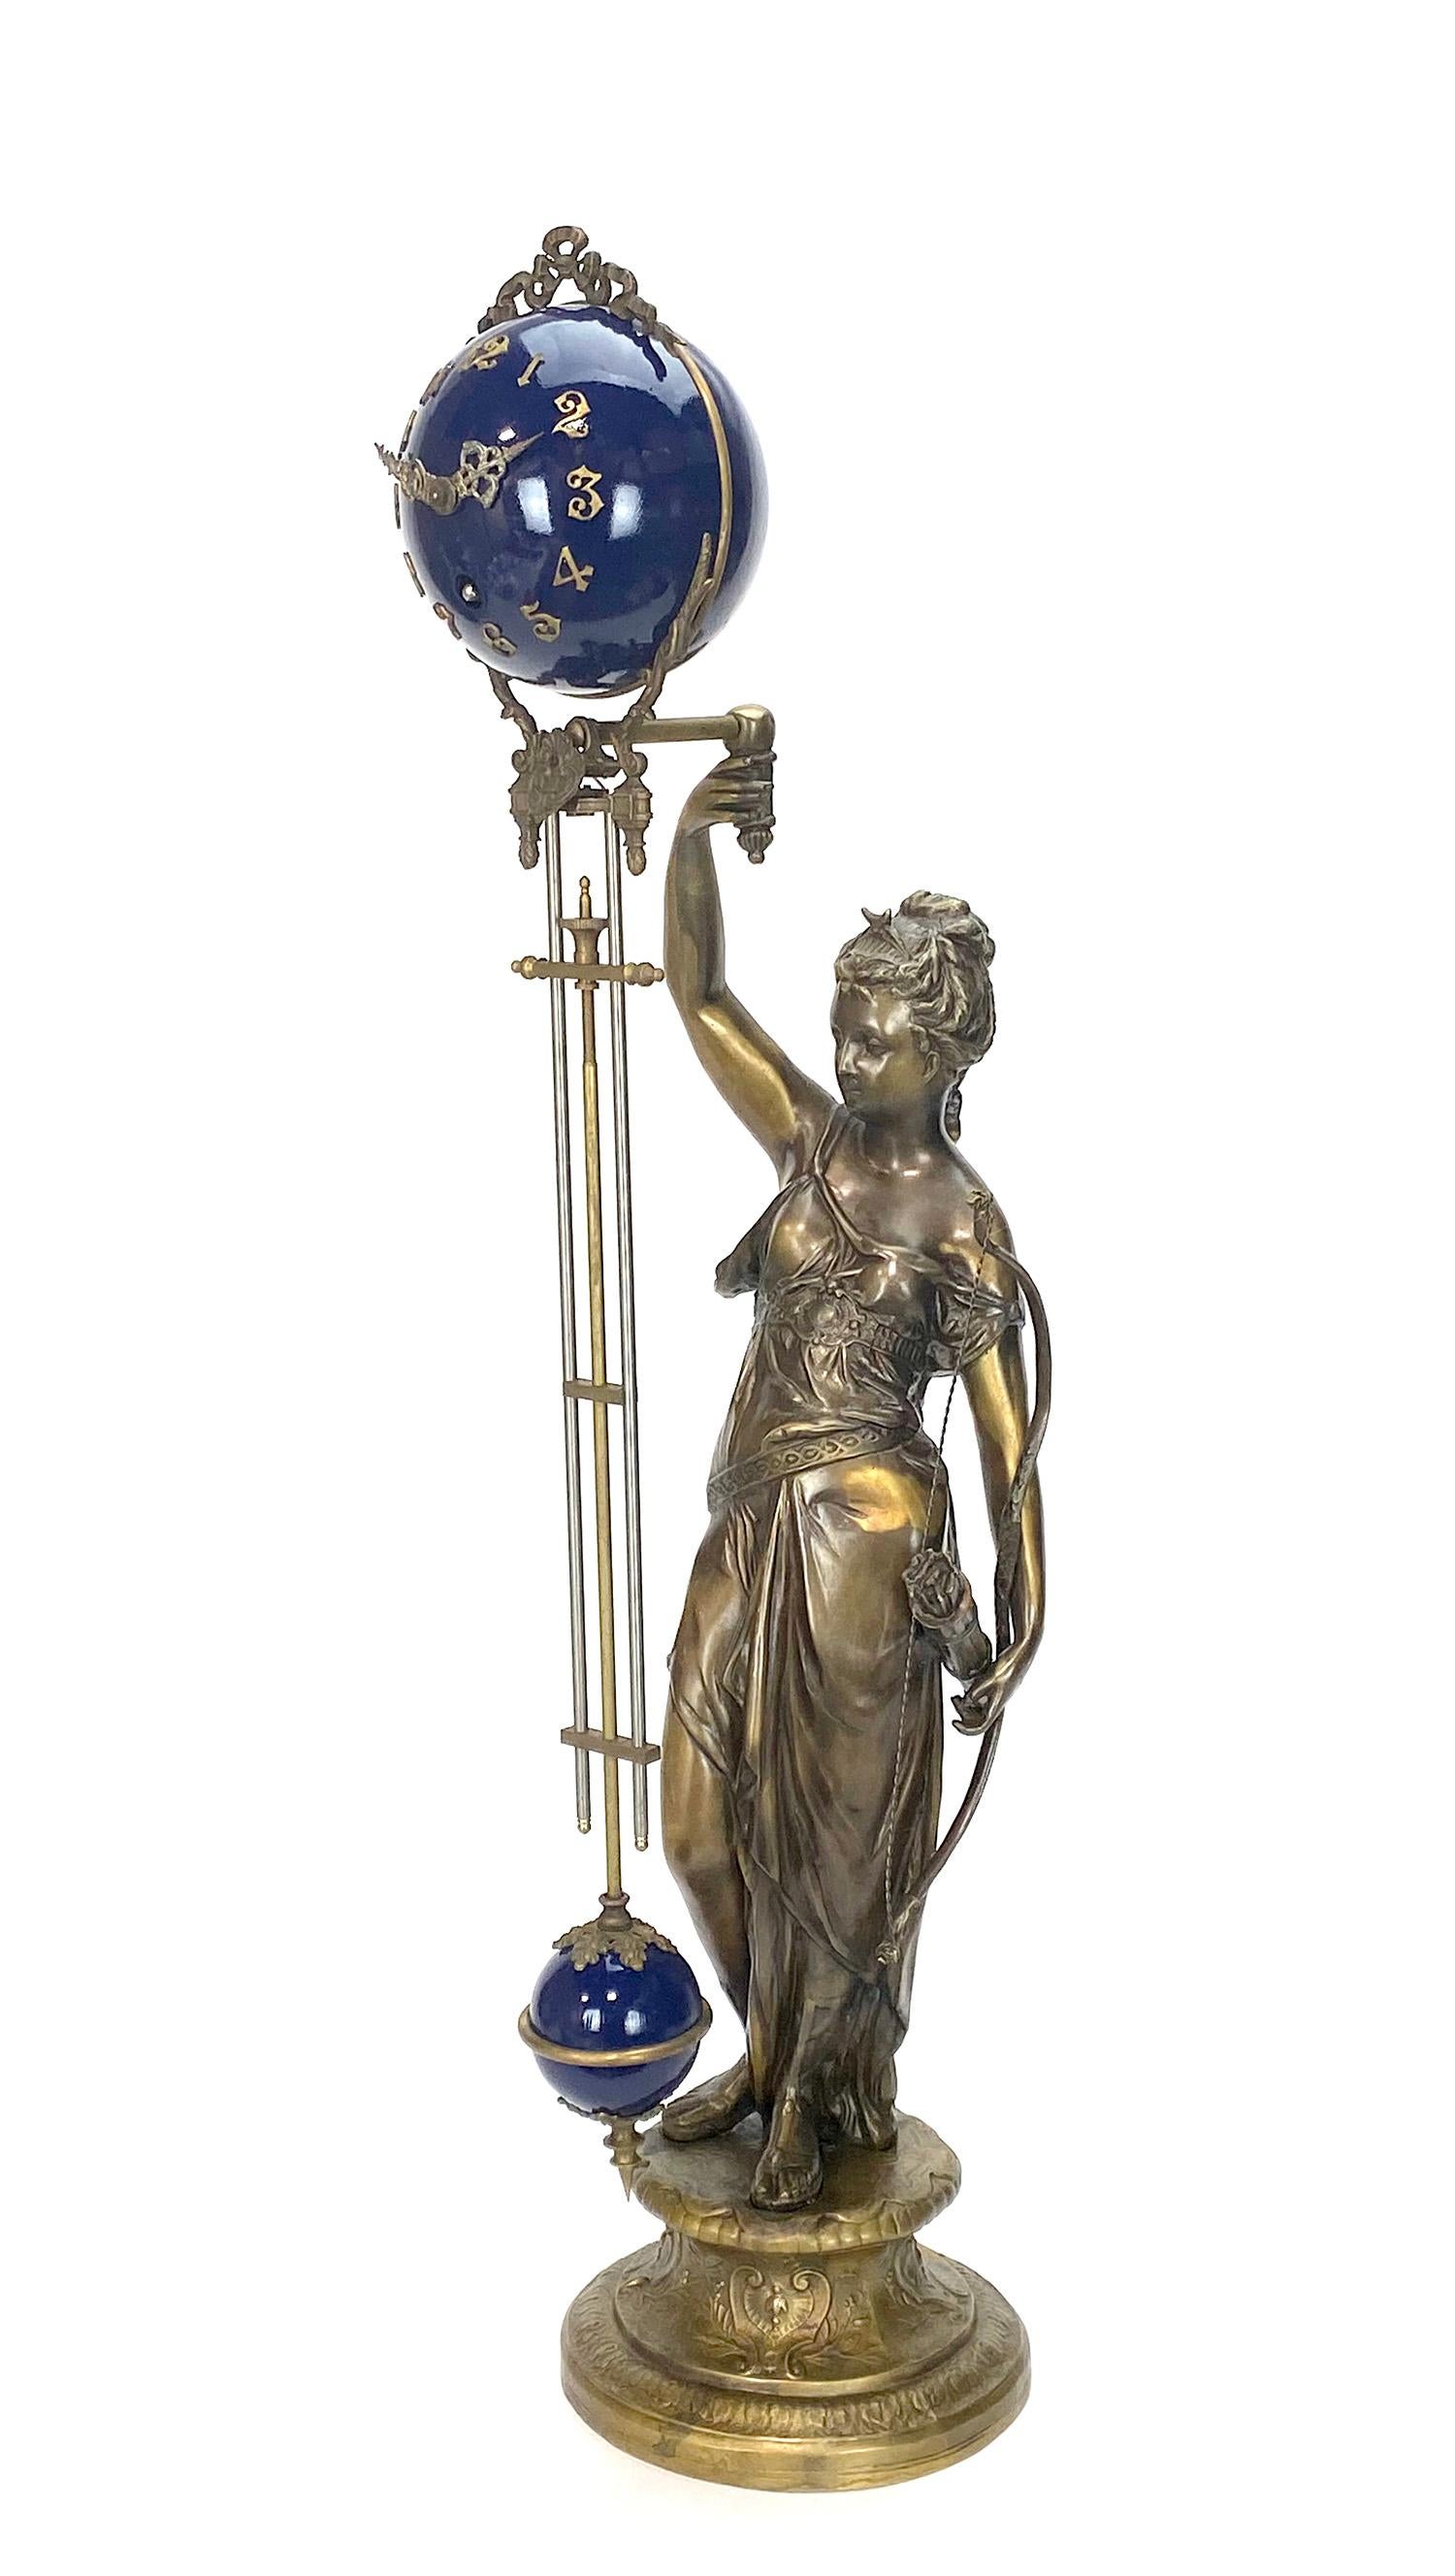 Große Mystery Diana kobaltblaue Kugel-Schaukeluhr

Ausgezeichnete Diana Statue 4